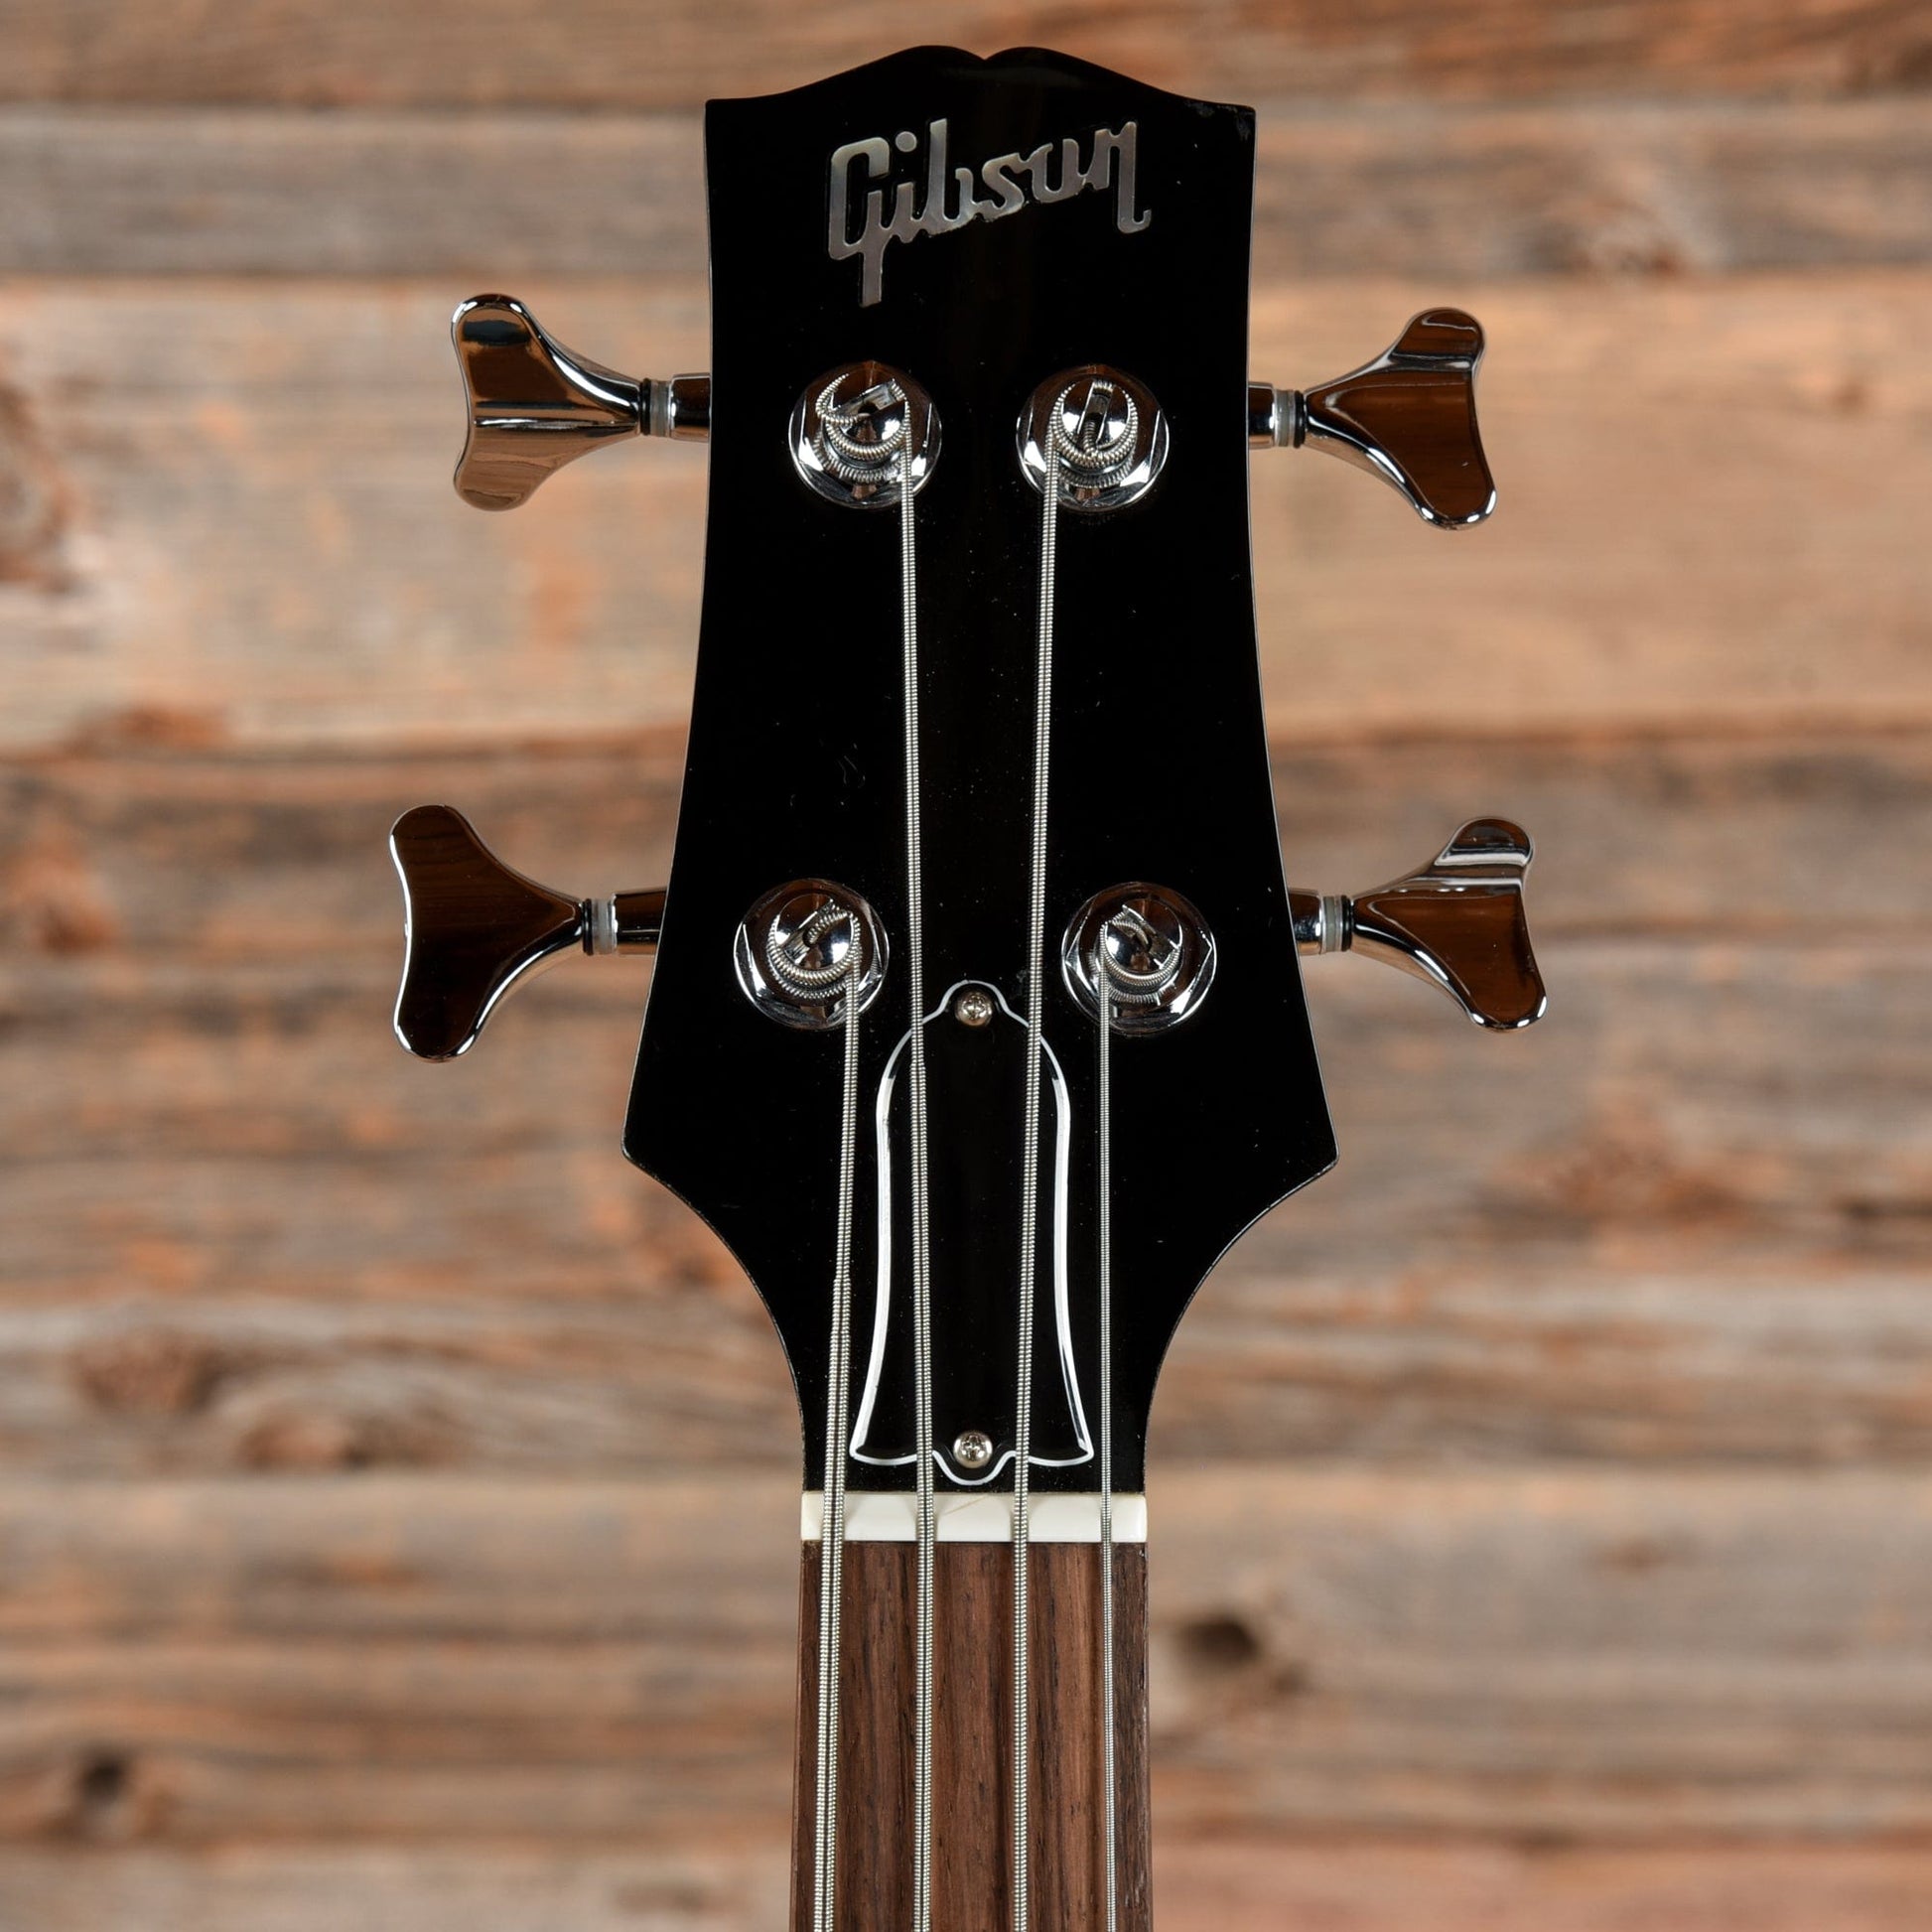 Gibson Les Paul Standard Bass Black 2011 Bass Guitars / 4-String